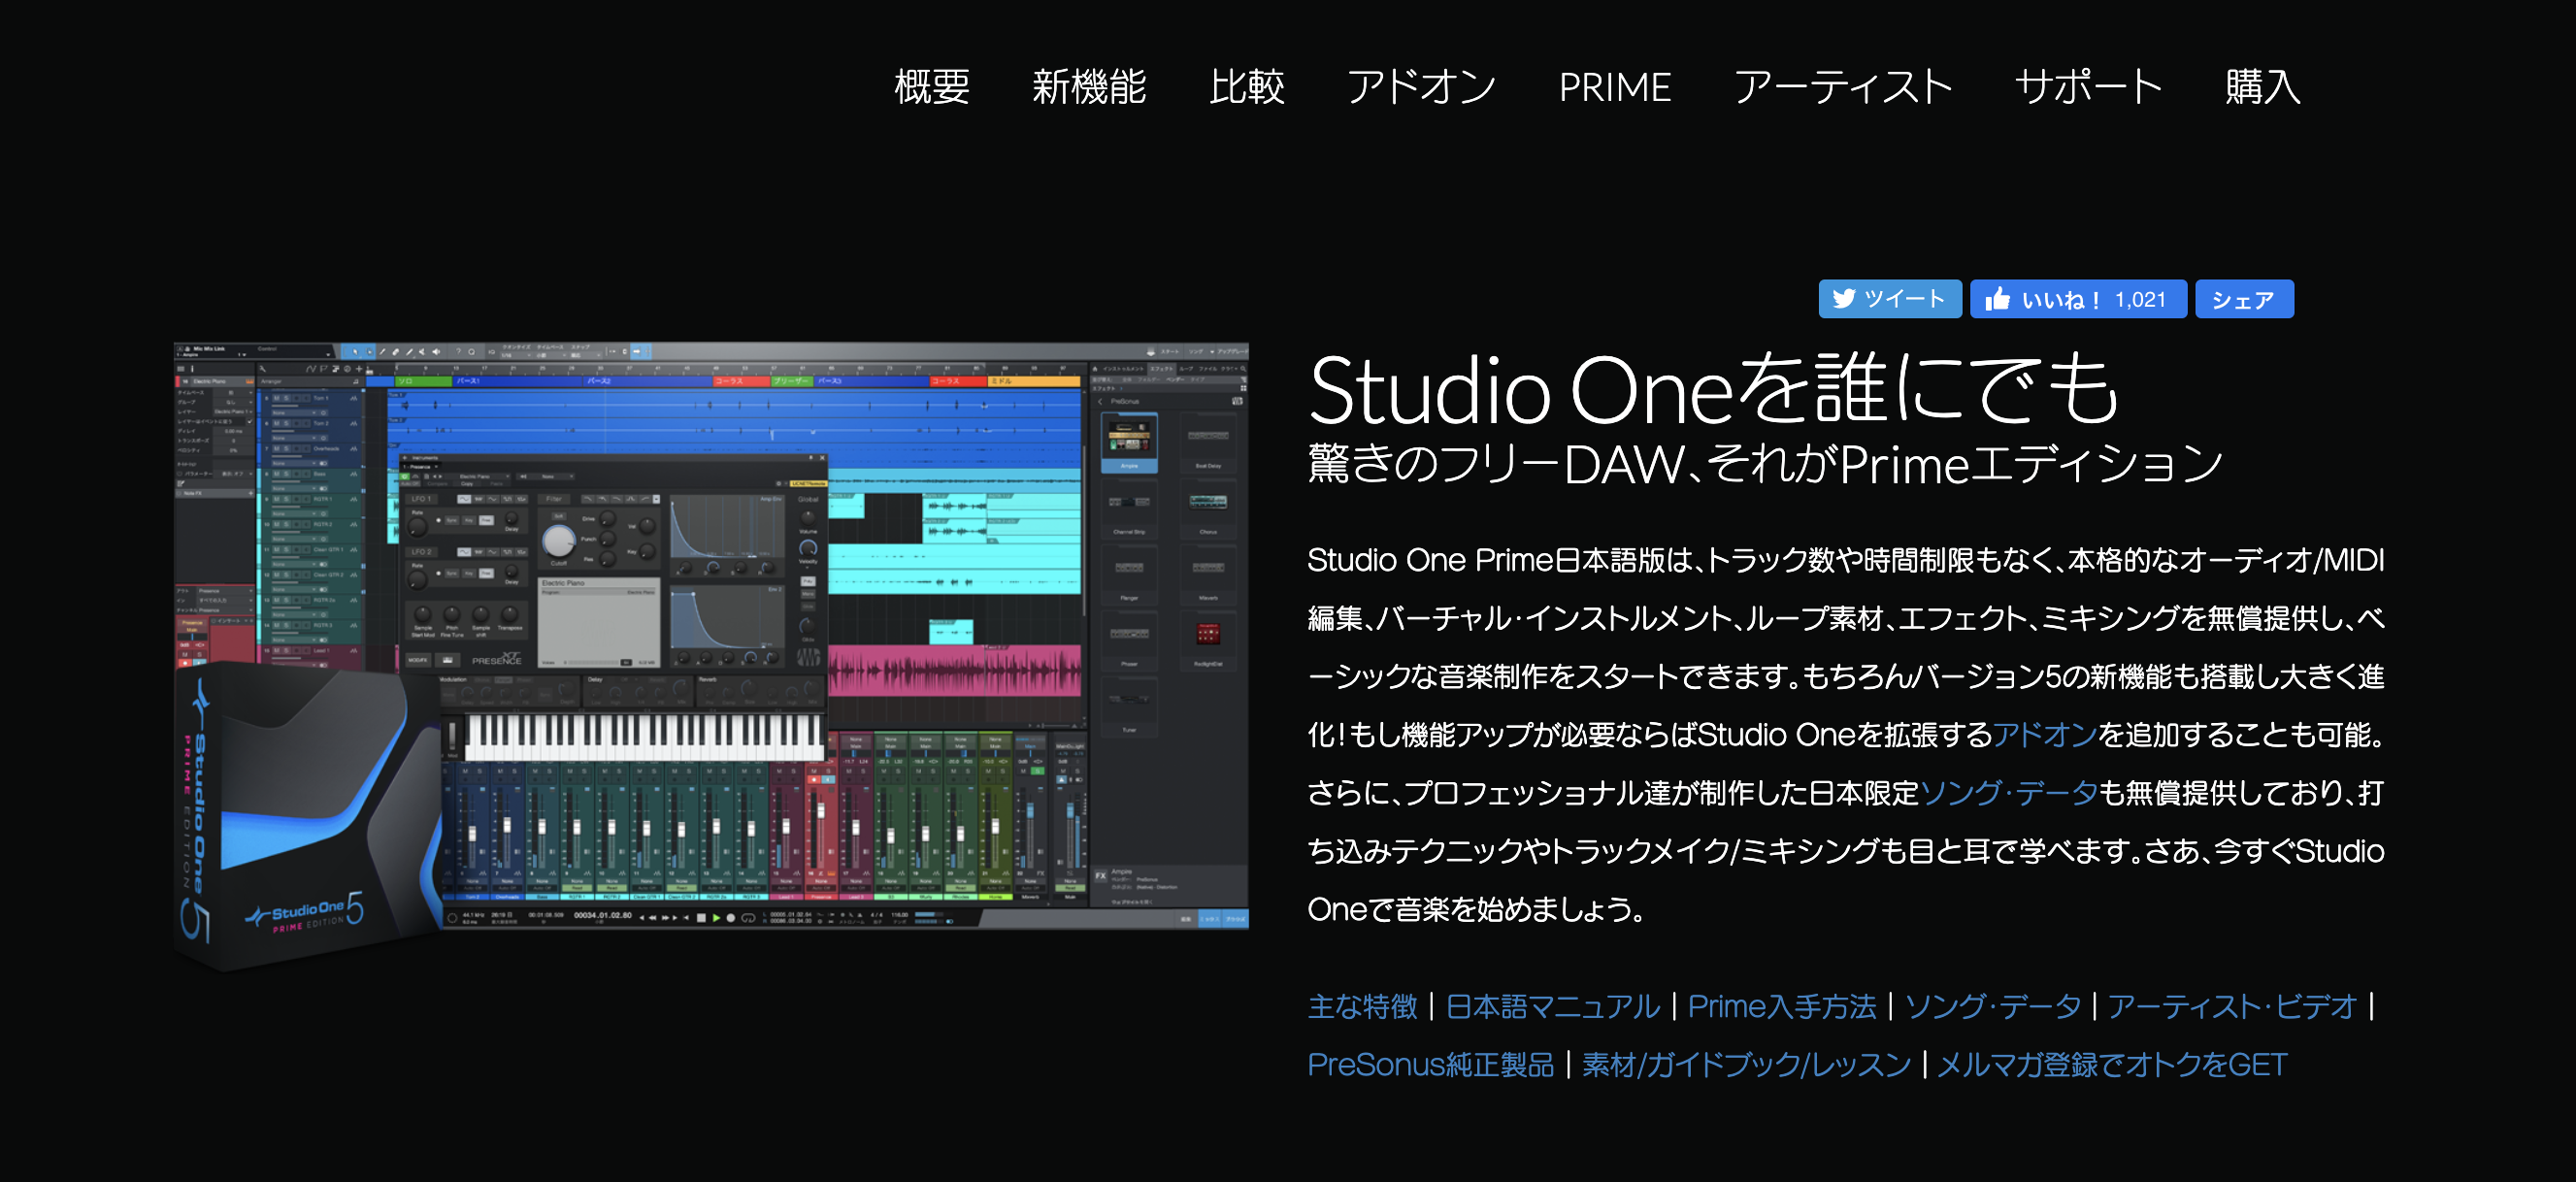 Studio one